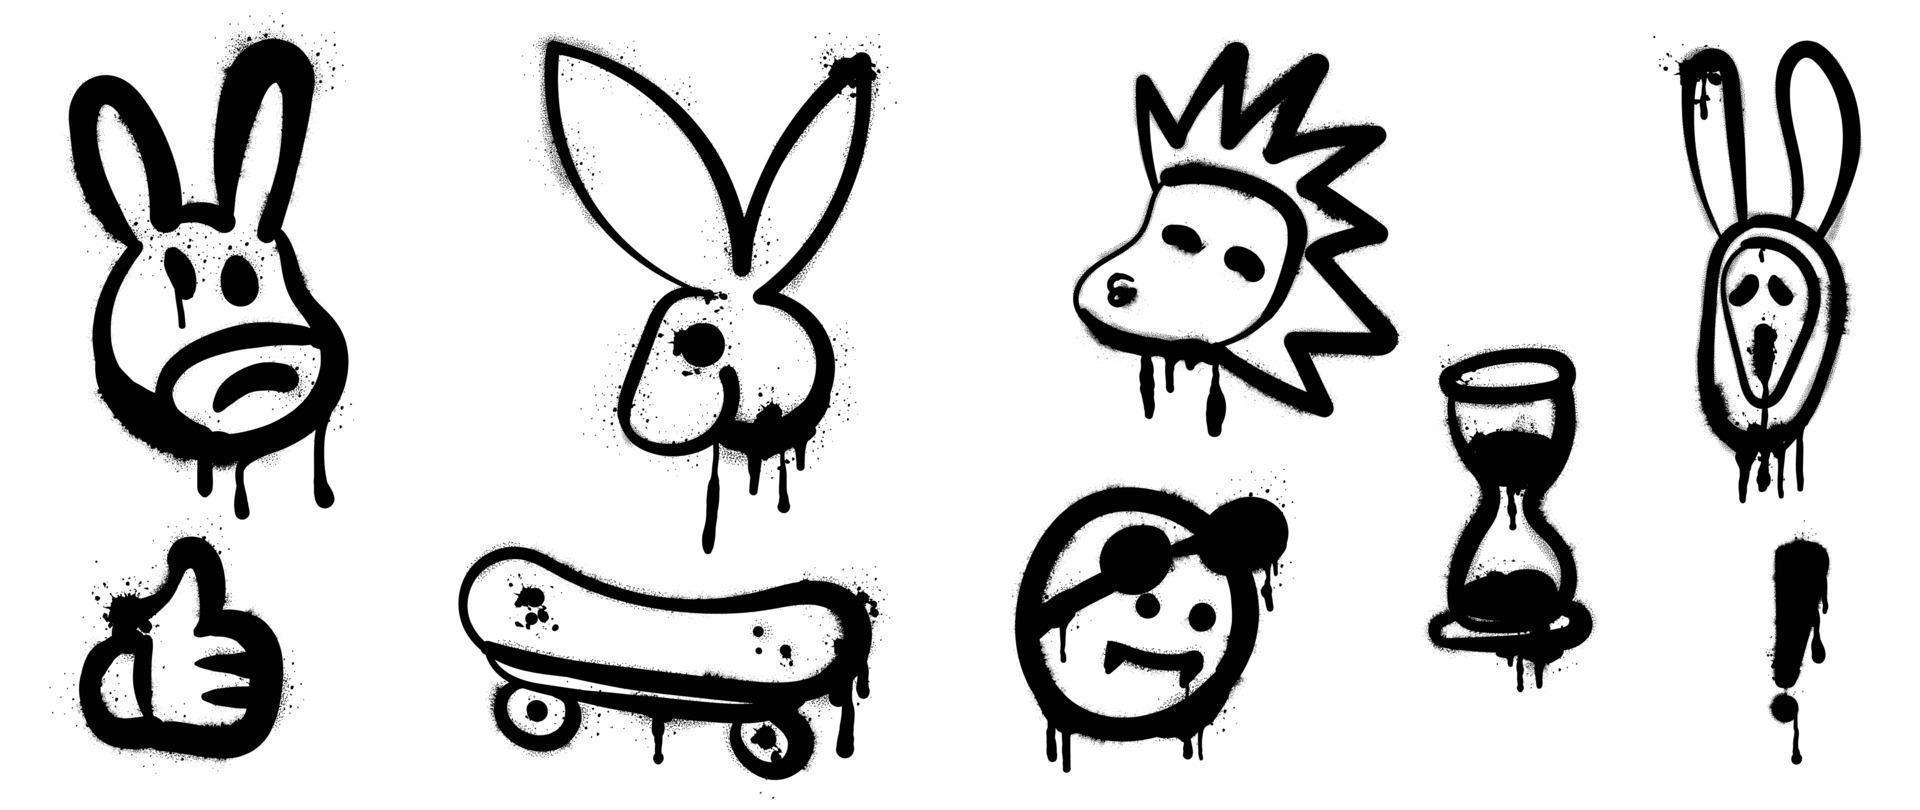 reeks van graffiti verstuiven patroon vector illustratie. verzameling van verstuiven structuur spookachtig dier masker, konijn, leeuw, duim omhoog, skateboard. elementen Aan wit achtergrond voor banier, decoratie, straat kunst.